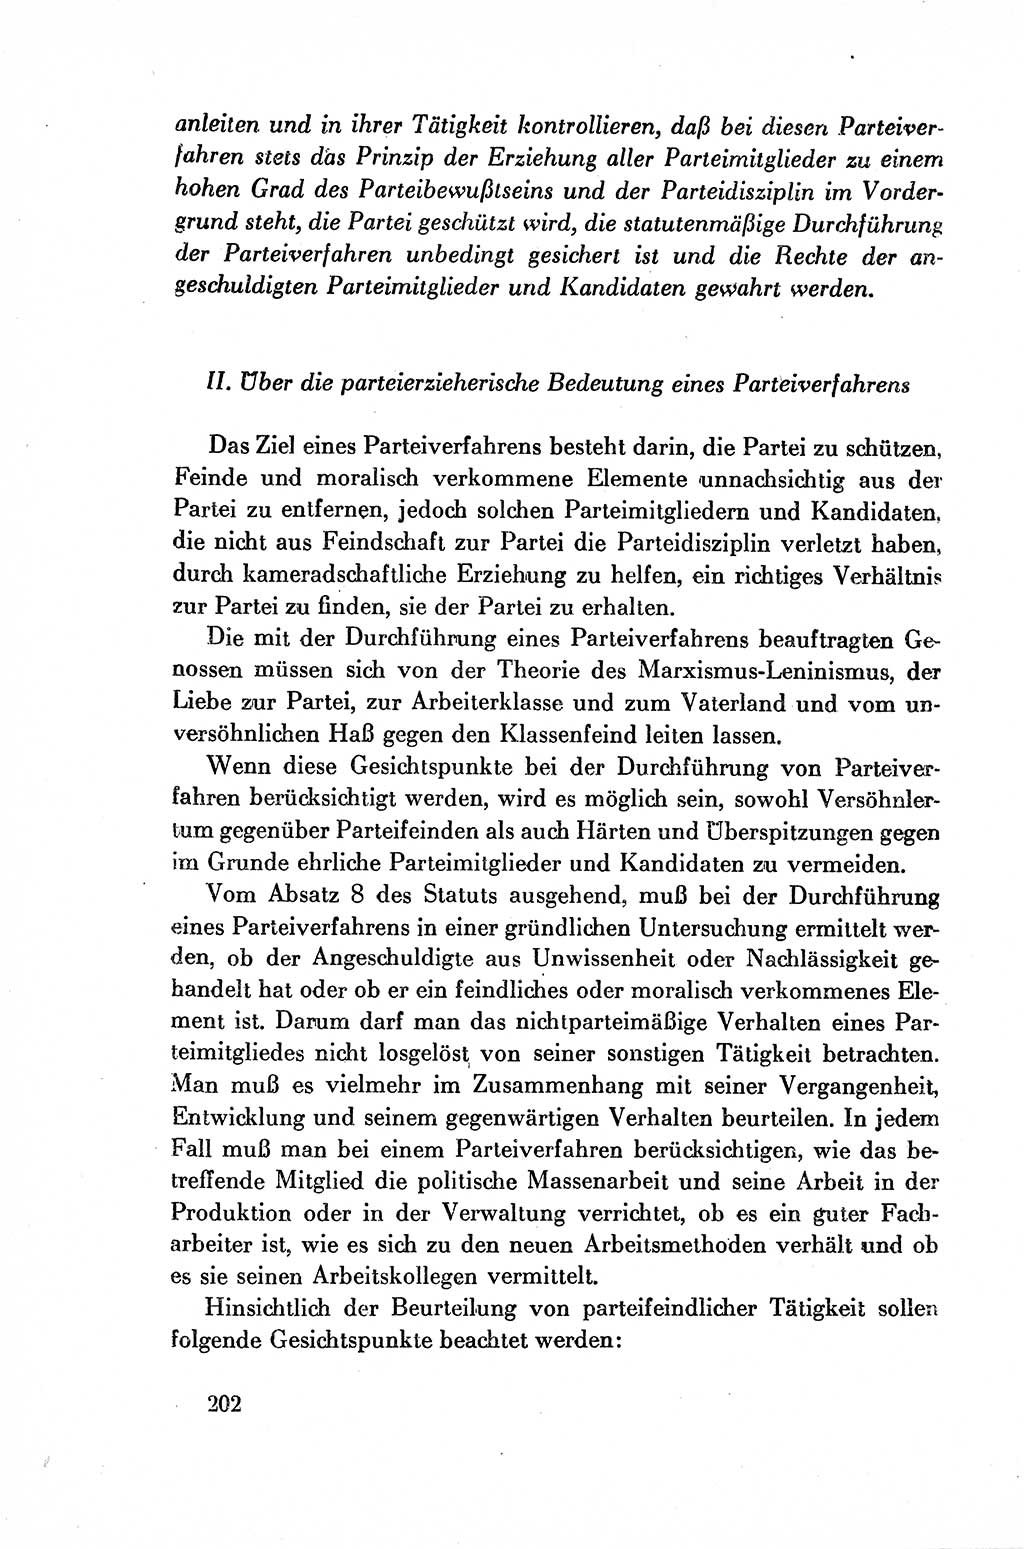 Dokumente der Sozialistischen Einheitspartei Deutschlands (SED) [Deutsche Demokratische Republik (DDR)] 1954-1955, Seite 202 (Dok. SED DDR 1954-1955, S. 202)